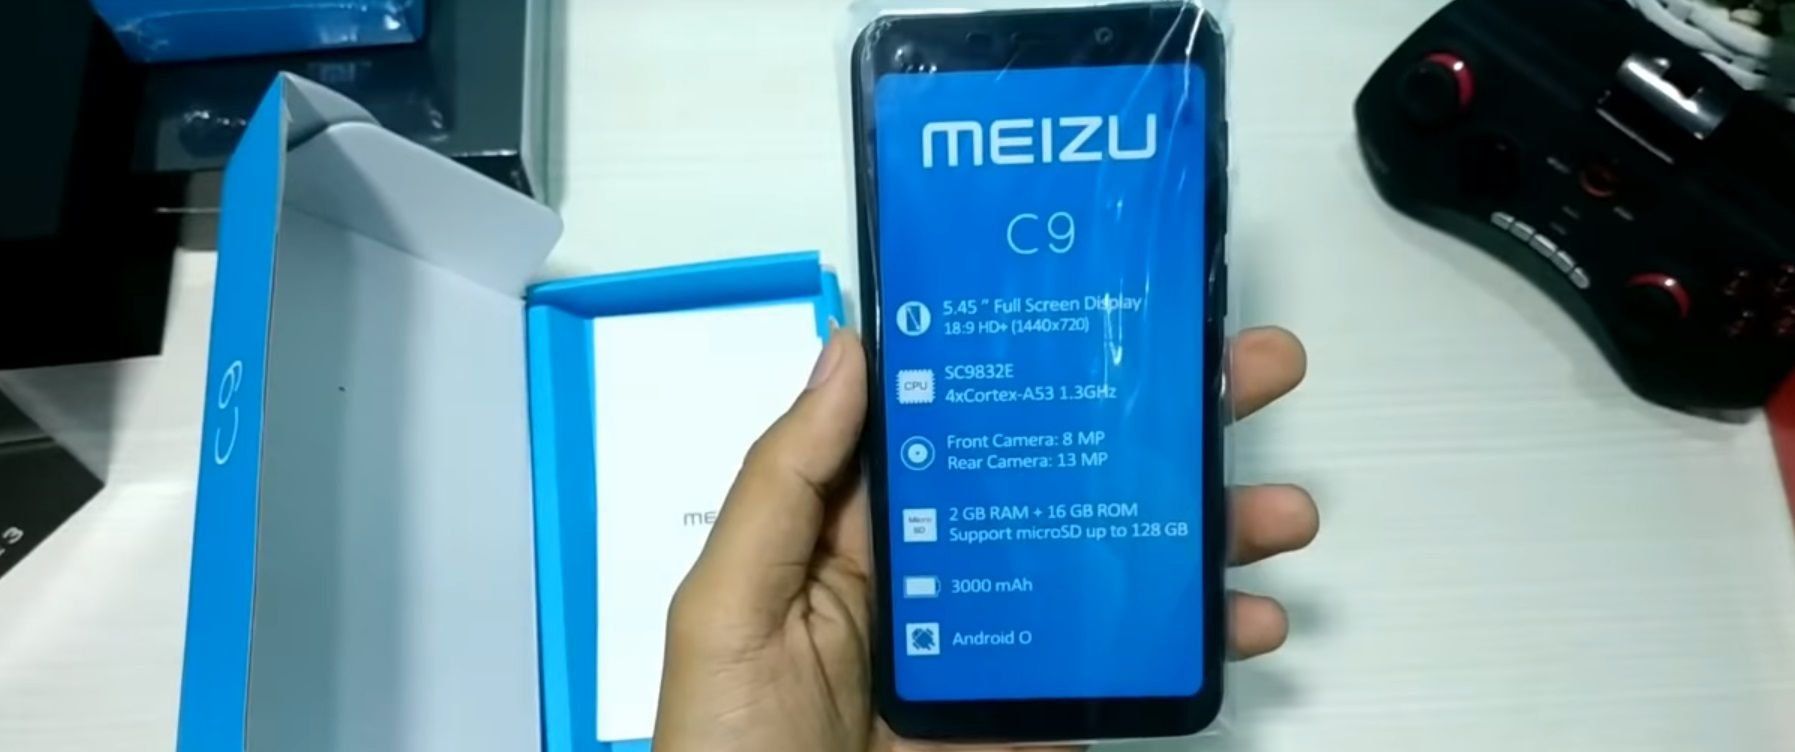 Smartphones Meizu C9 et C9 Pro - avantages et inconvénients